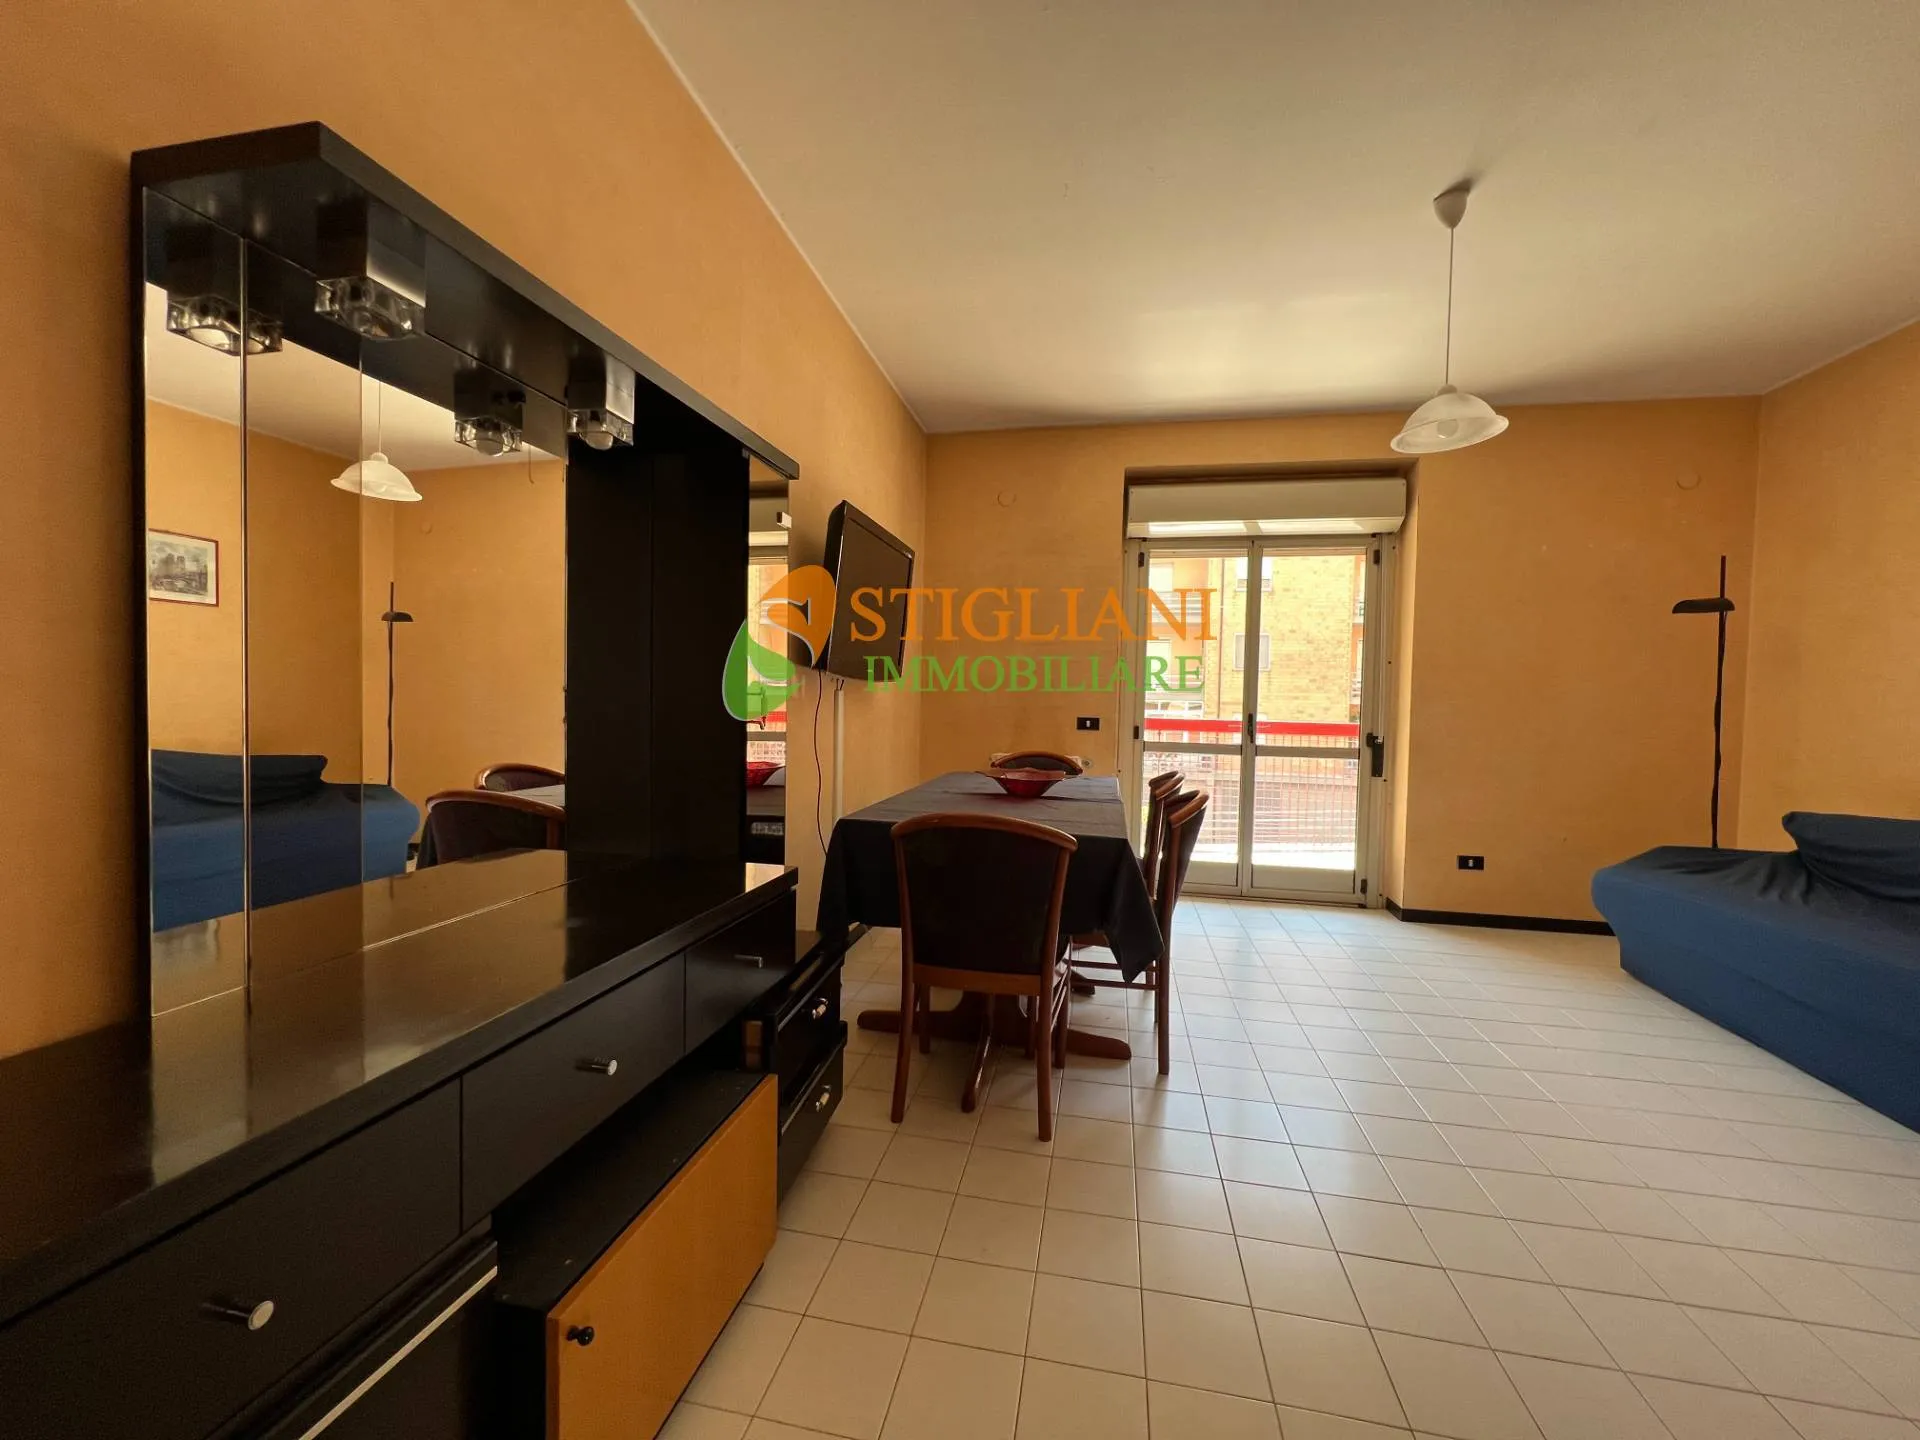 Immagine per Appartamento in vendita a Campobasso Via Carducci